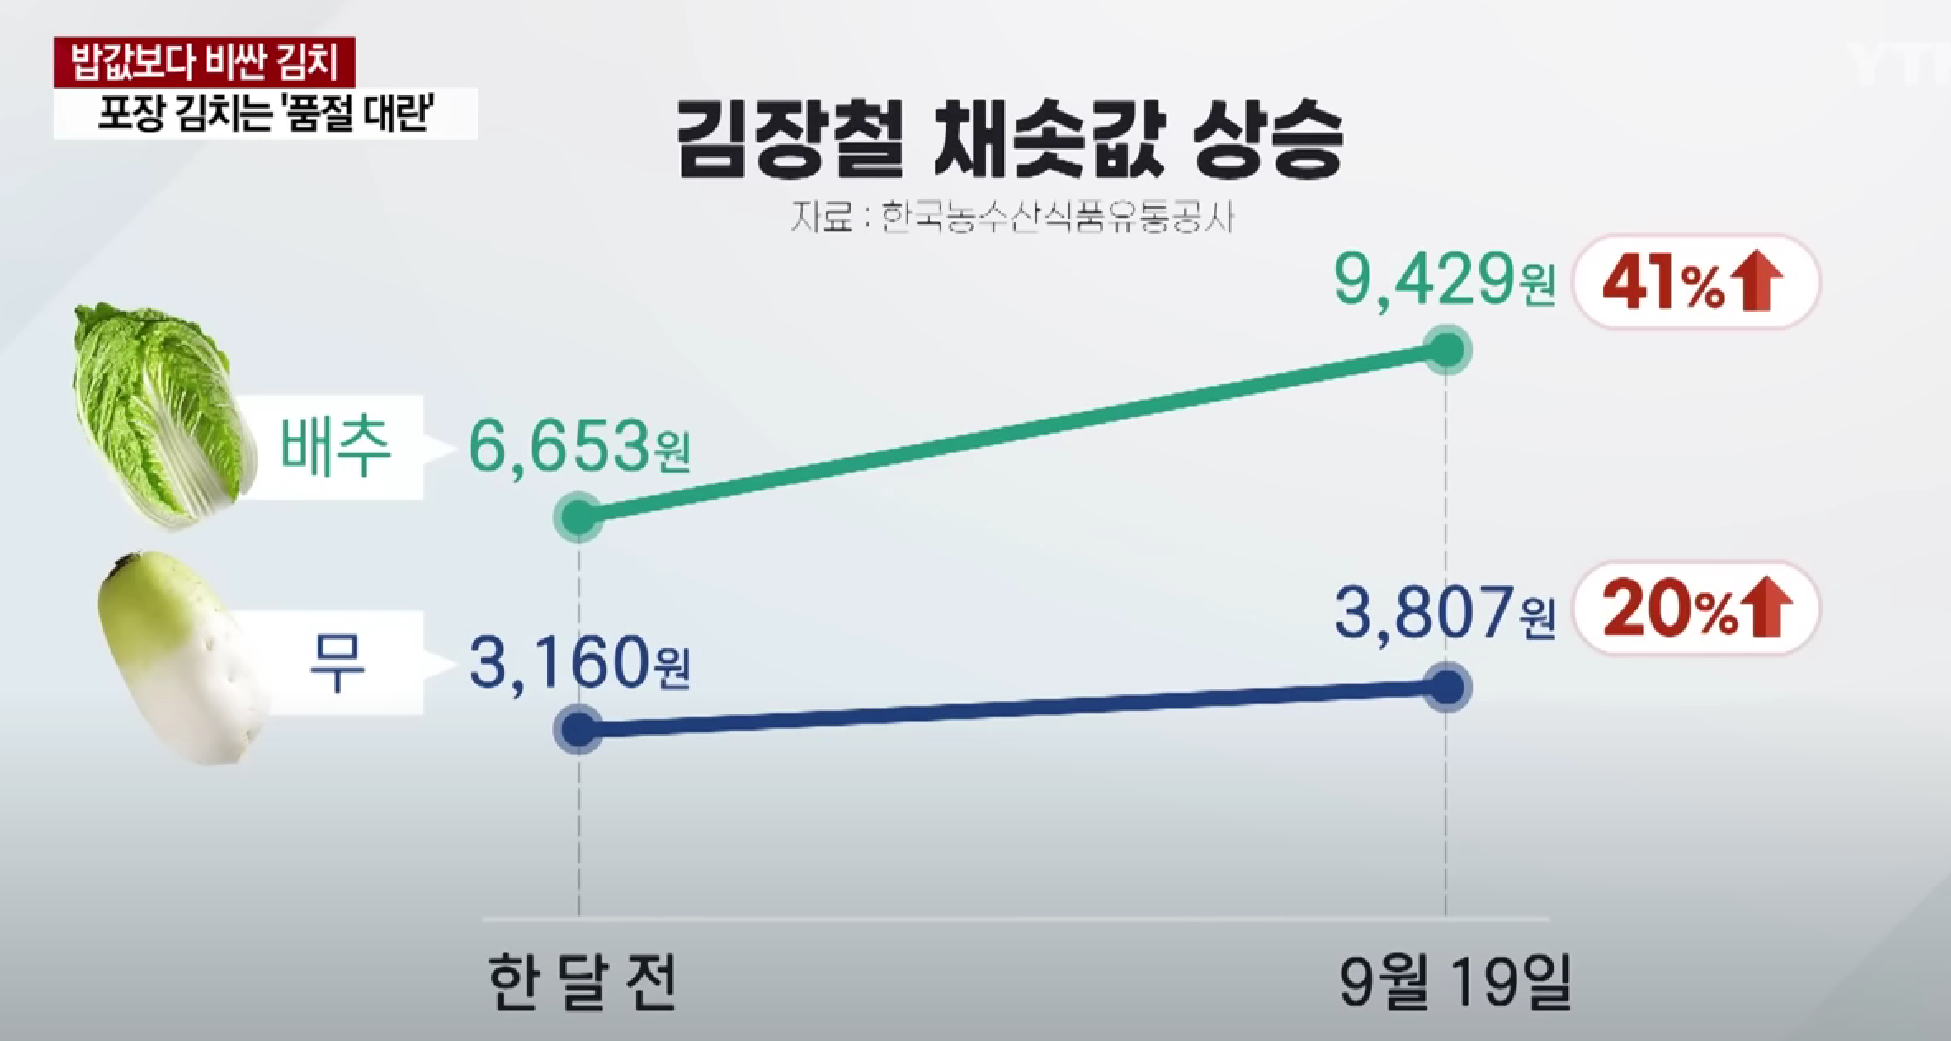 韩国白菜和萝卜价格飙升